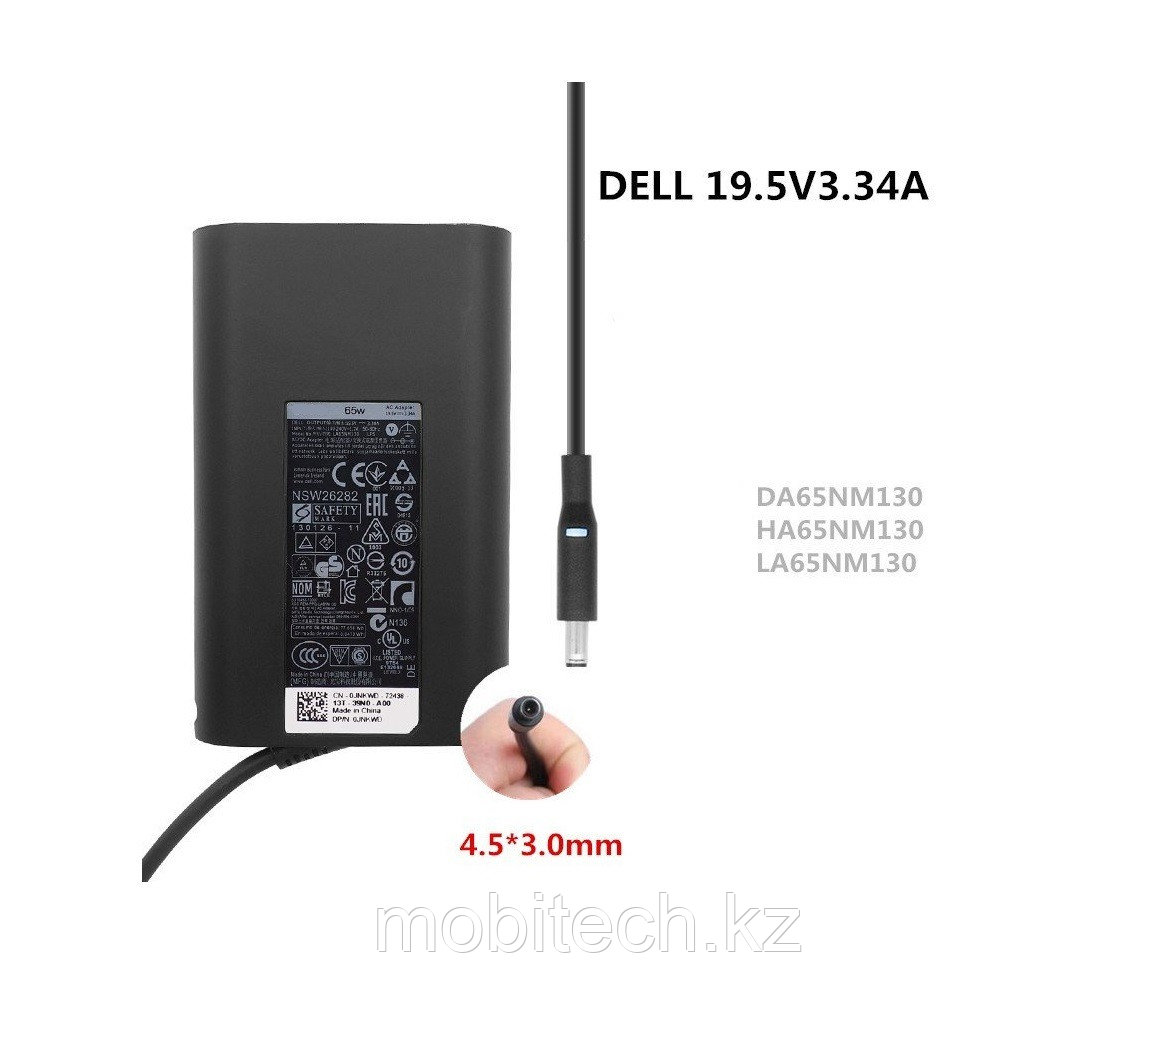 Блоки питания Dell 19.5v 3.34A 65W 4.5*3.0mm LA65NM130 Dell XPS 13 Dell Inspiron 5767 зарядка, блок питания,